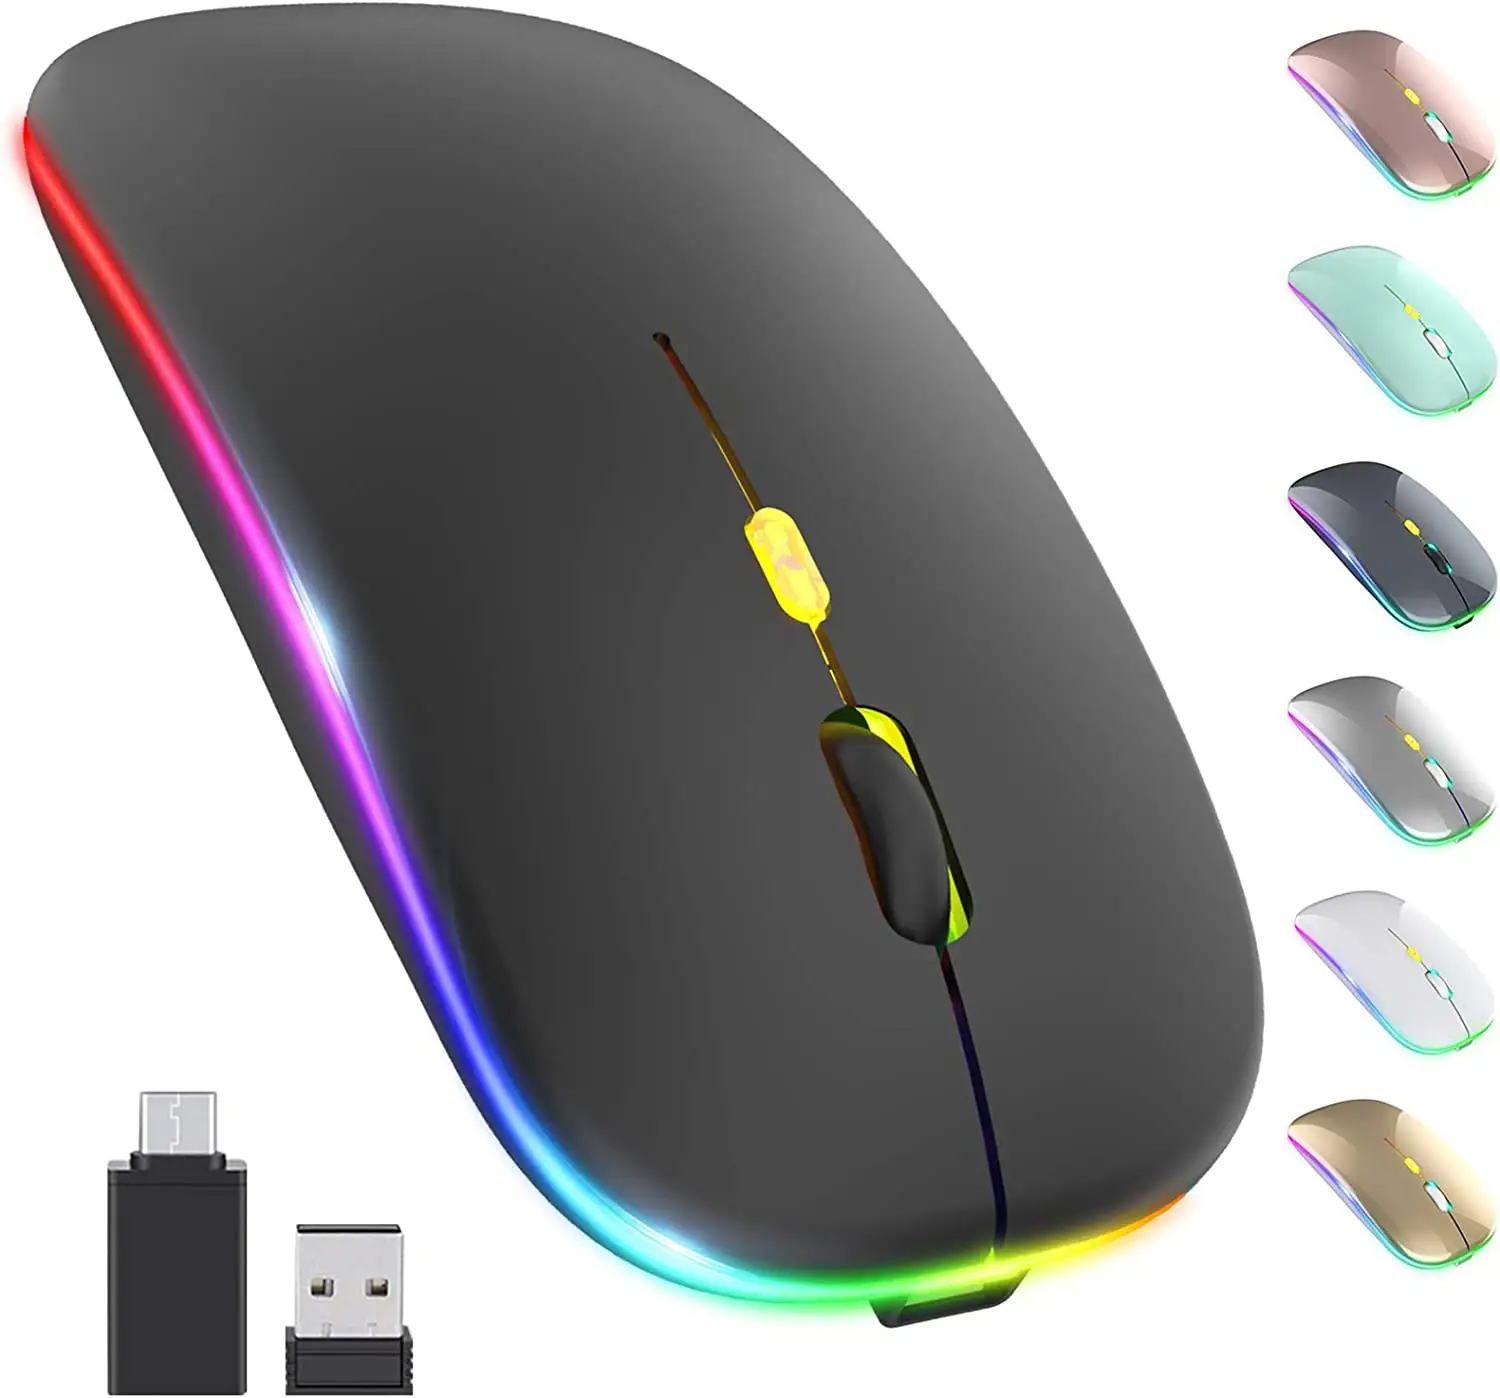 Ratón óptico inalámbrico para juegos, dispositivo delgado y portátil, RGB, BT 2,4G, modo Dual, USB, PC y ordenador portátil, recargable, fabricante